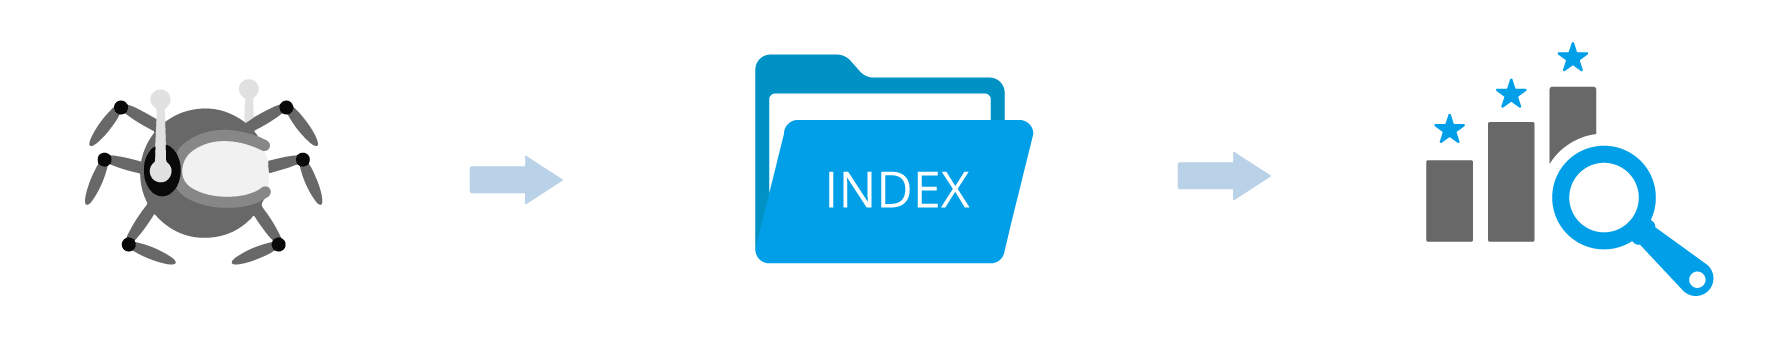 Ablauf von Crawling, Indexierung und Ranking